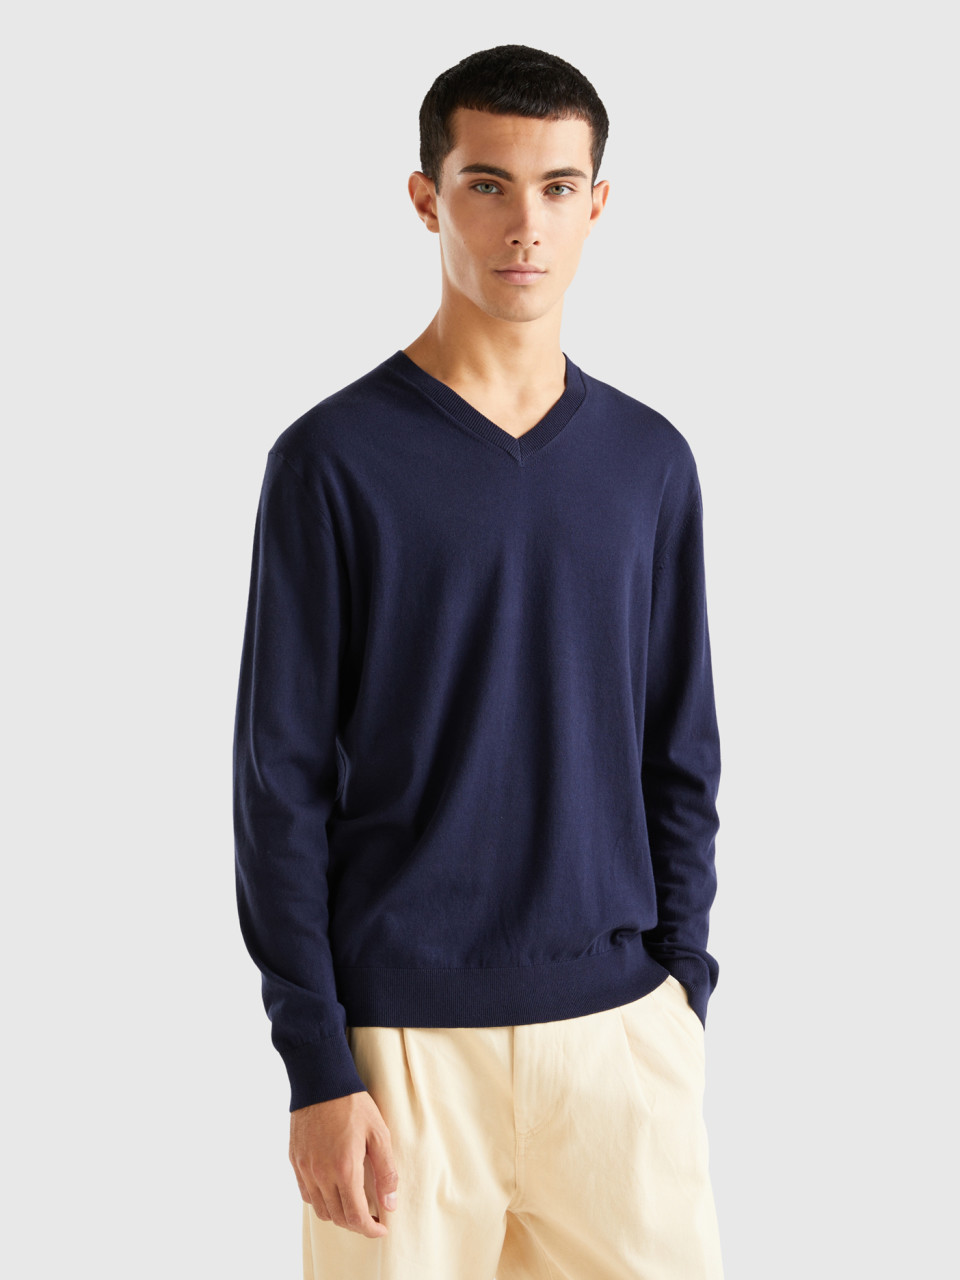 Benetton, V-neck Sweater In Lightweight Cotton Blend, Dark Blue, Men